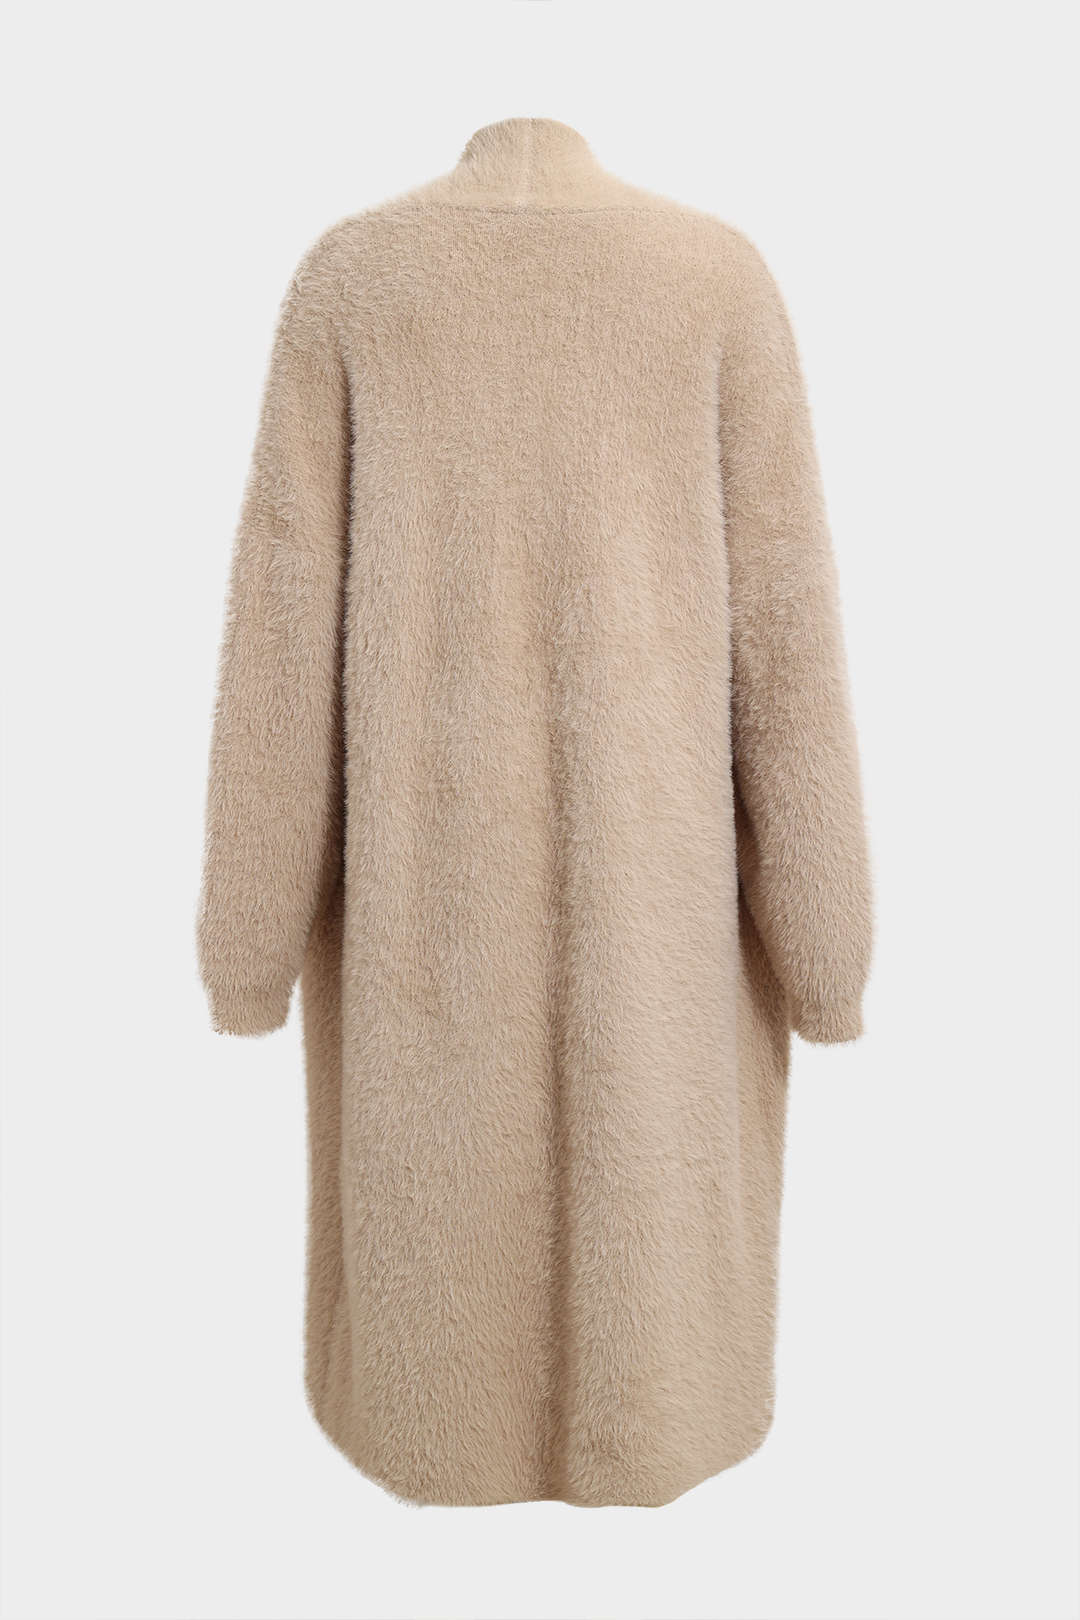 Faux Fur Open Front Long Coat